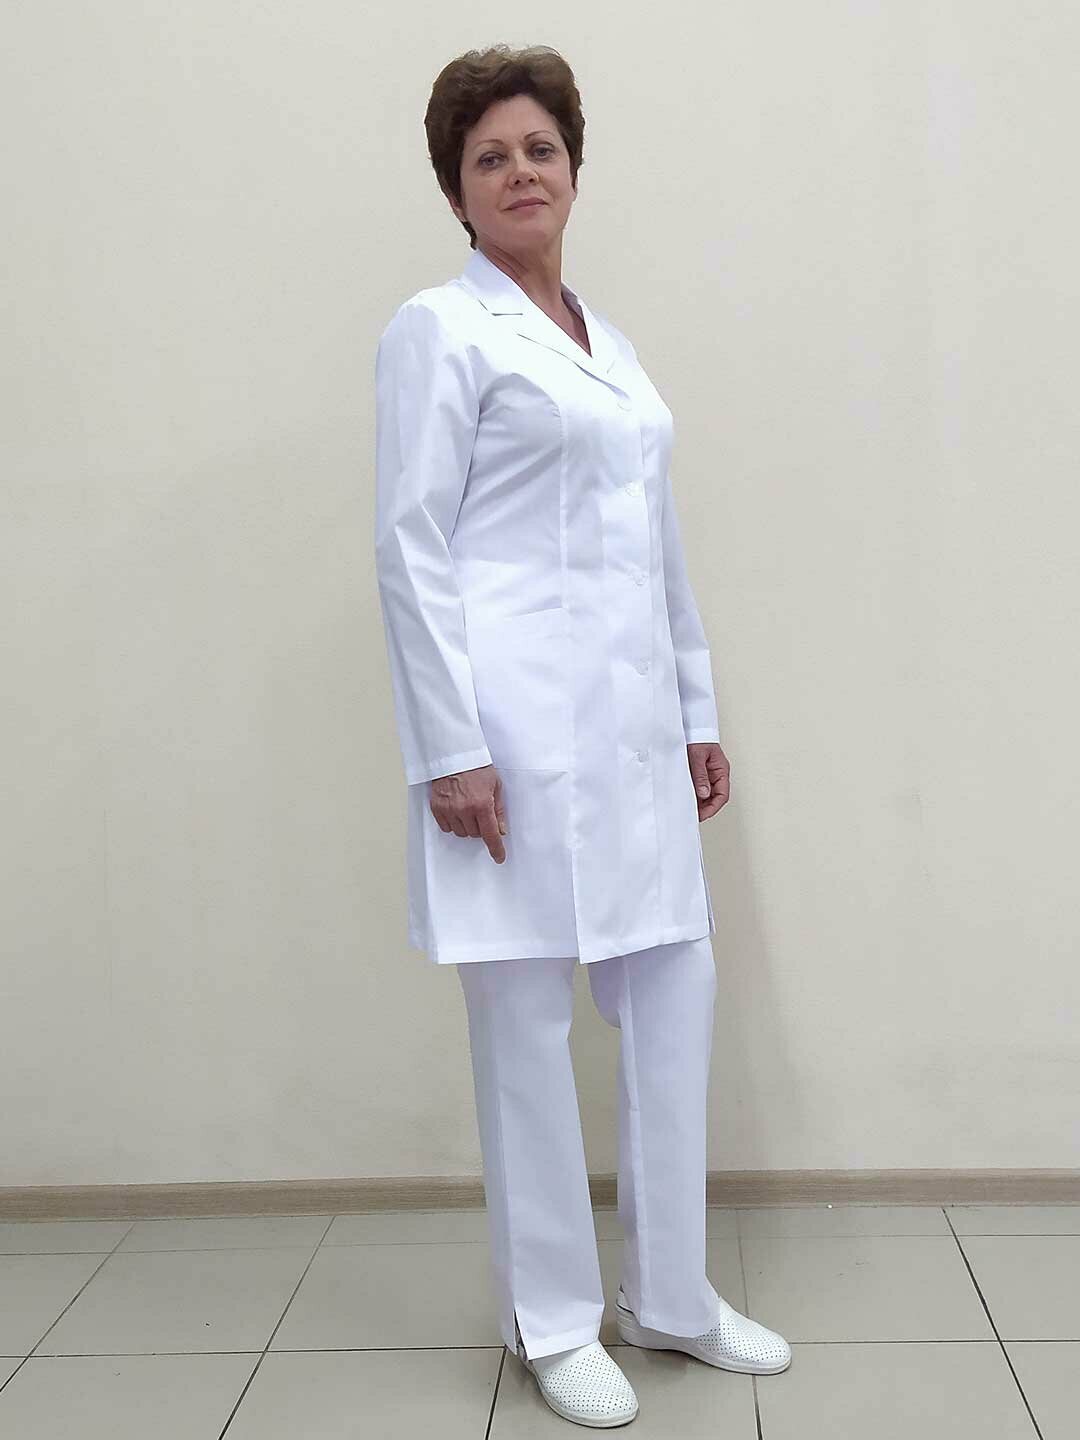 Халат женский, производитель Фабрика швейных изделий №3, модель М-194, рост 164, размер 54, ткань поликот, цвет белый